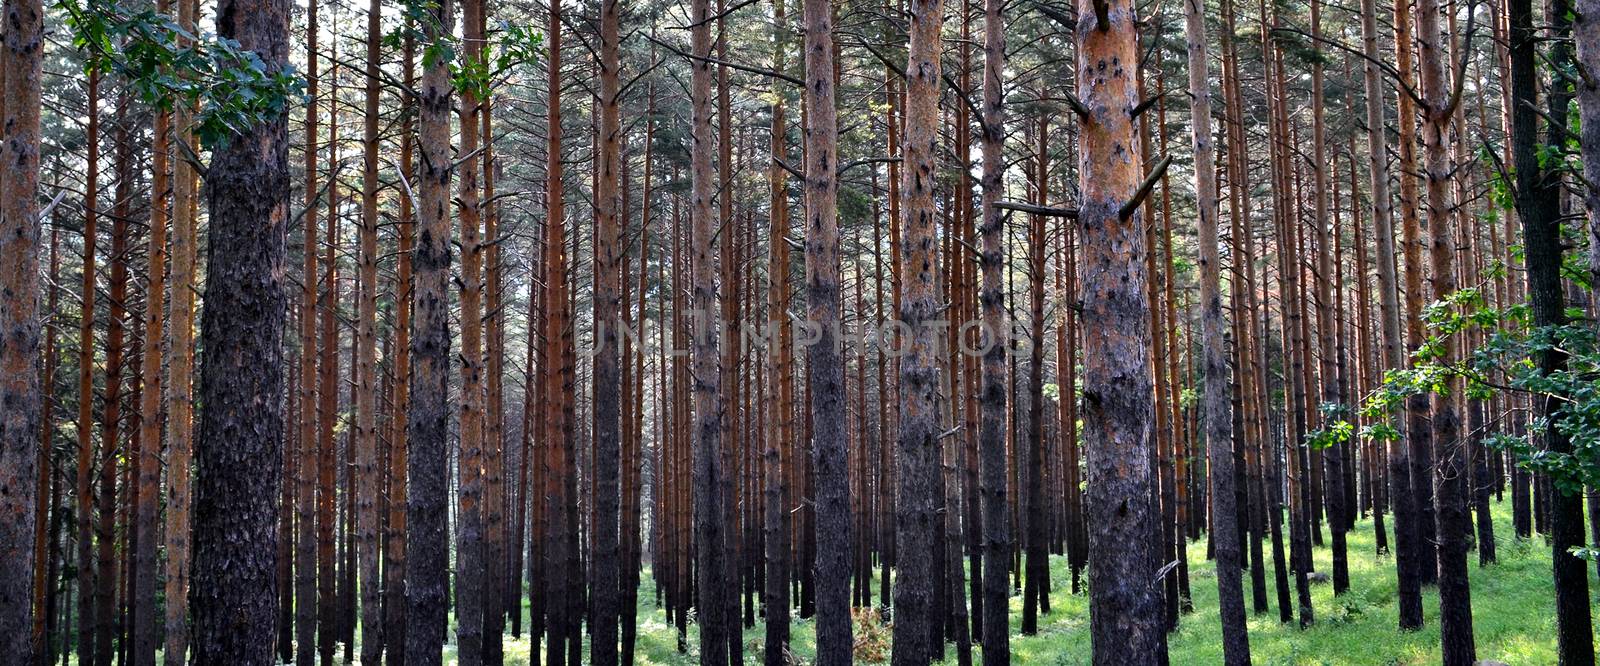 Fir trunks forest by hibrida13